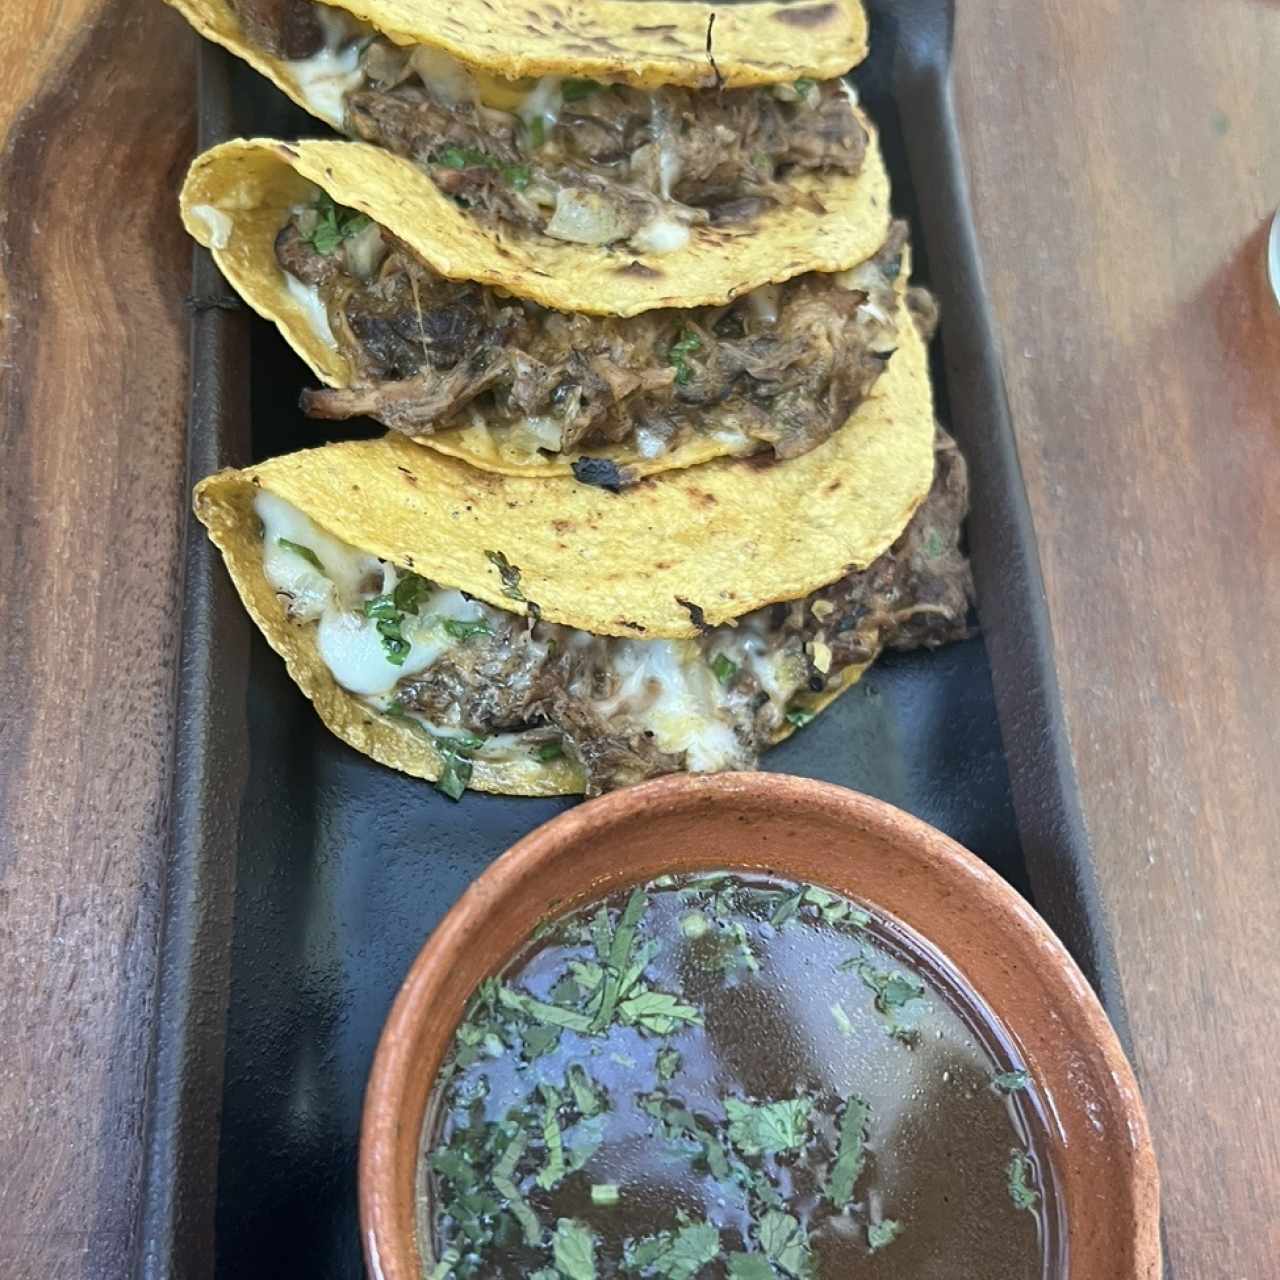 Tacos de birria